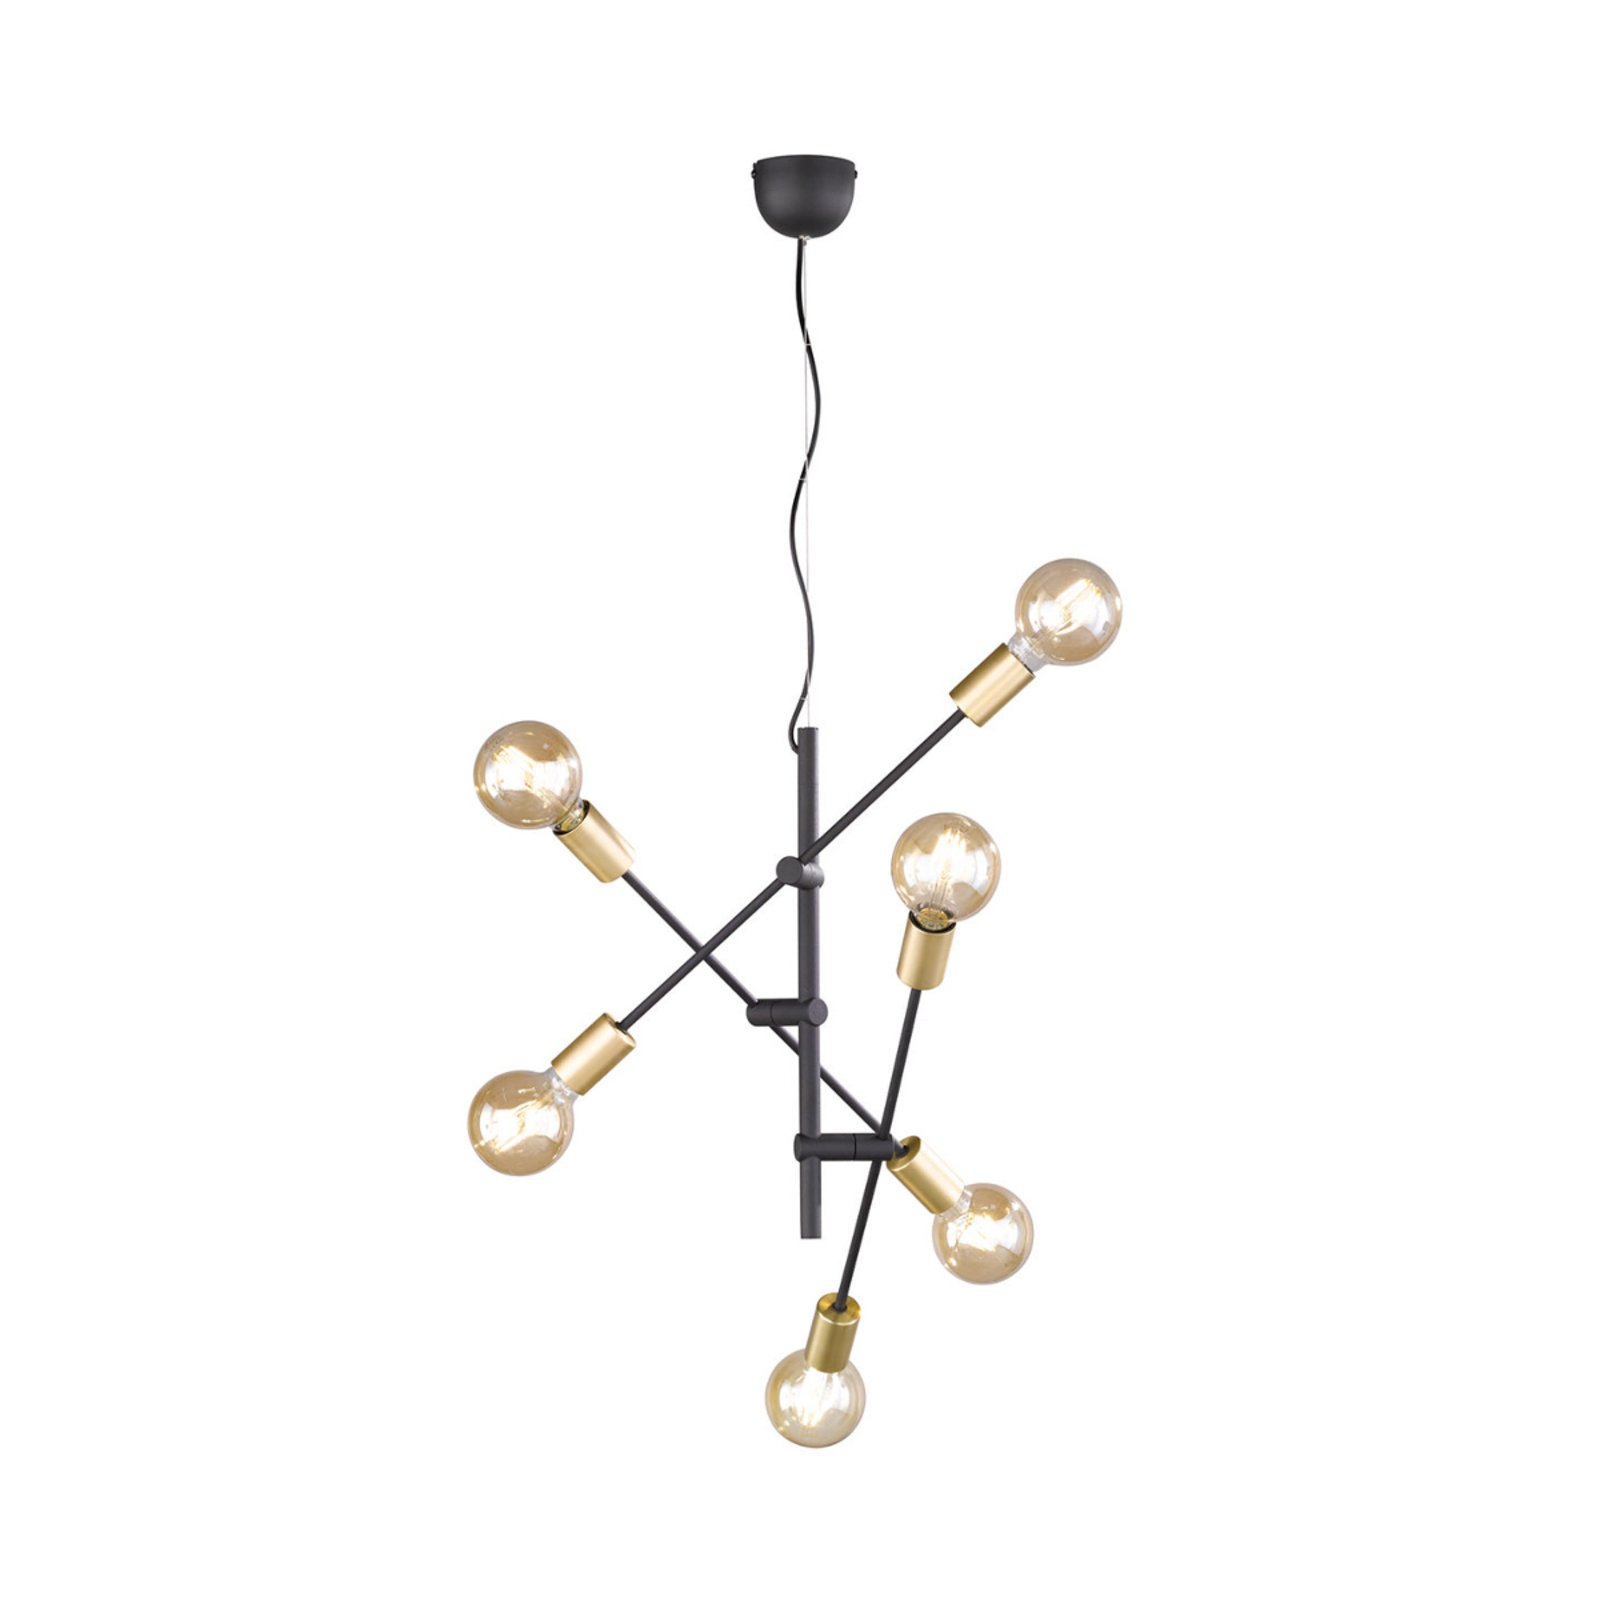 Minimalistisch vormgegeven hanglamp Cross